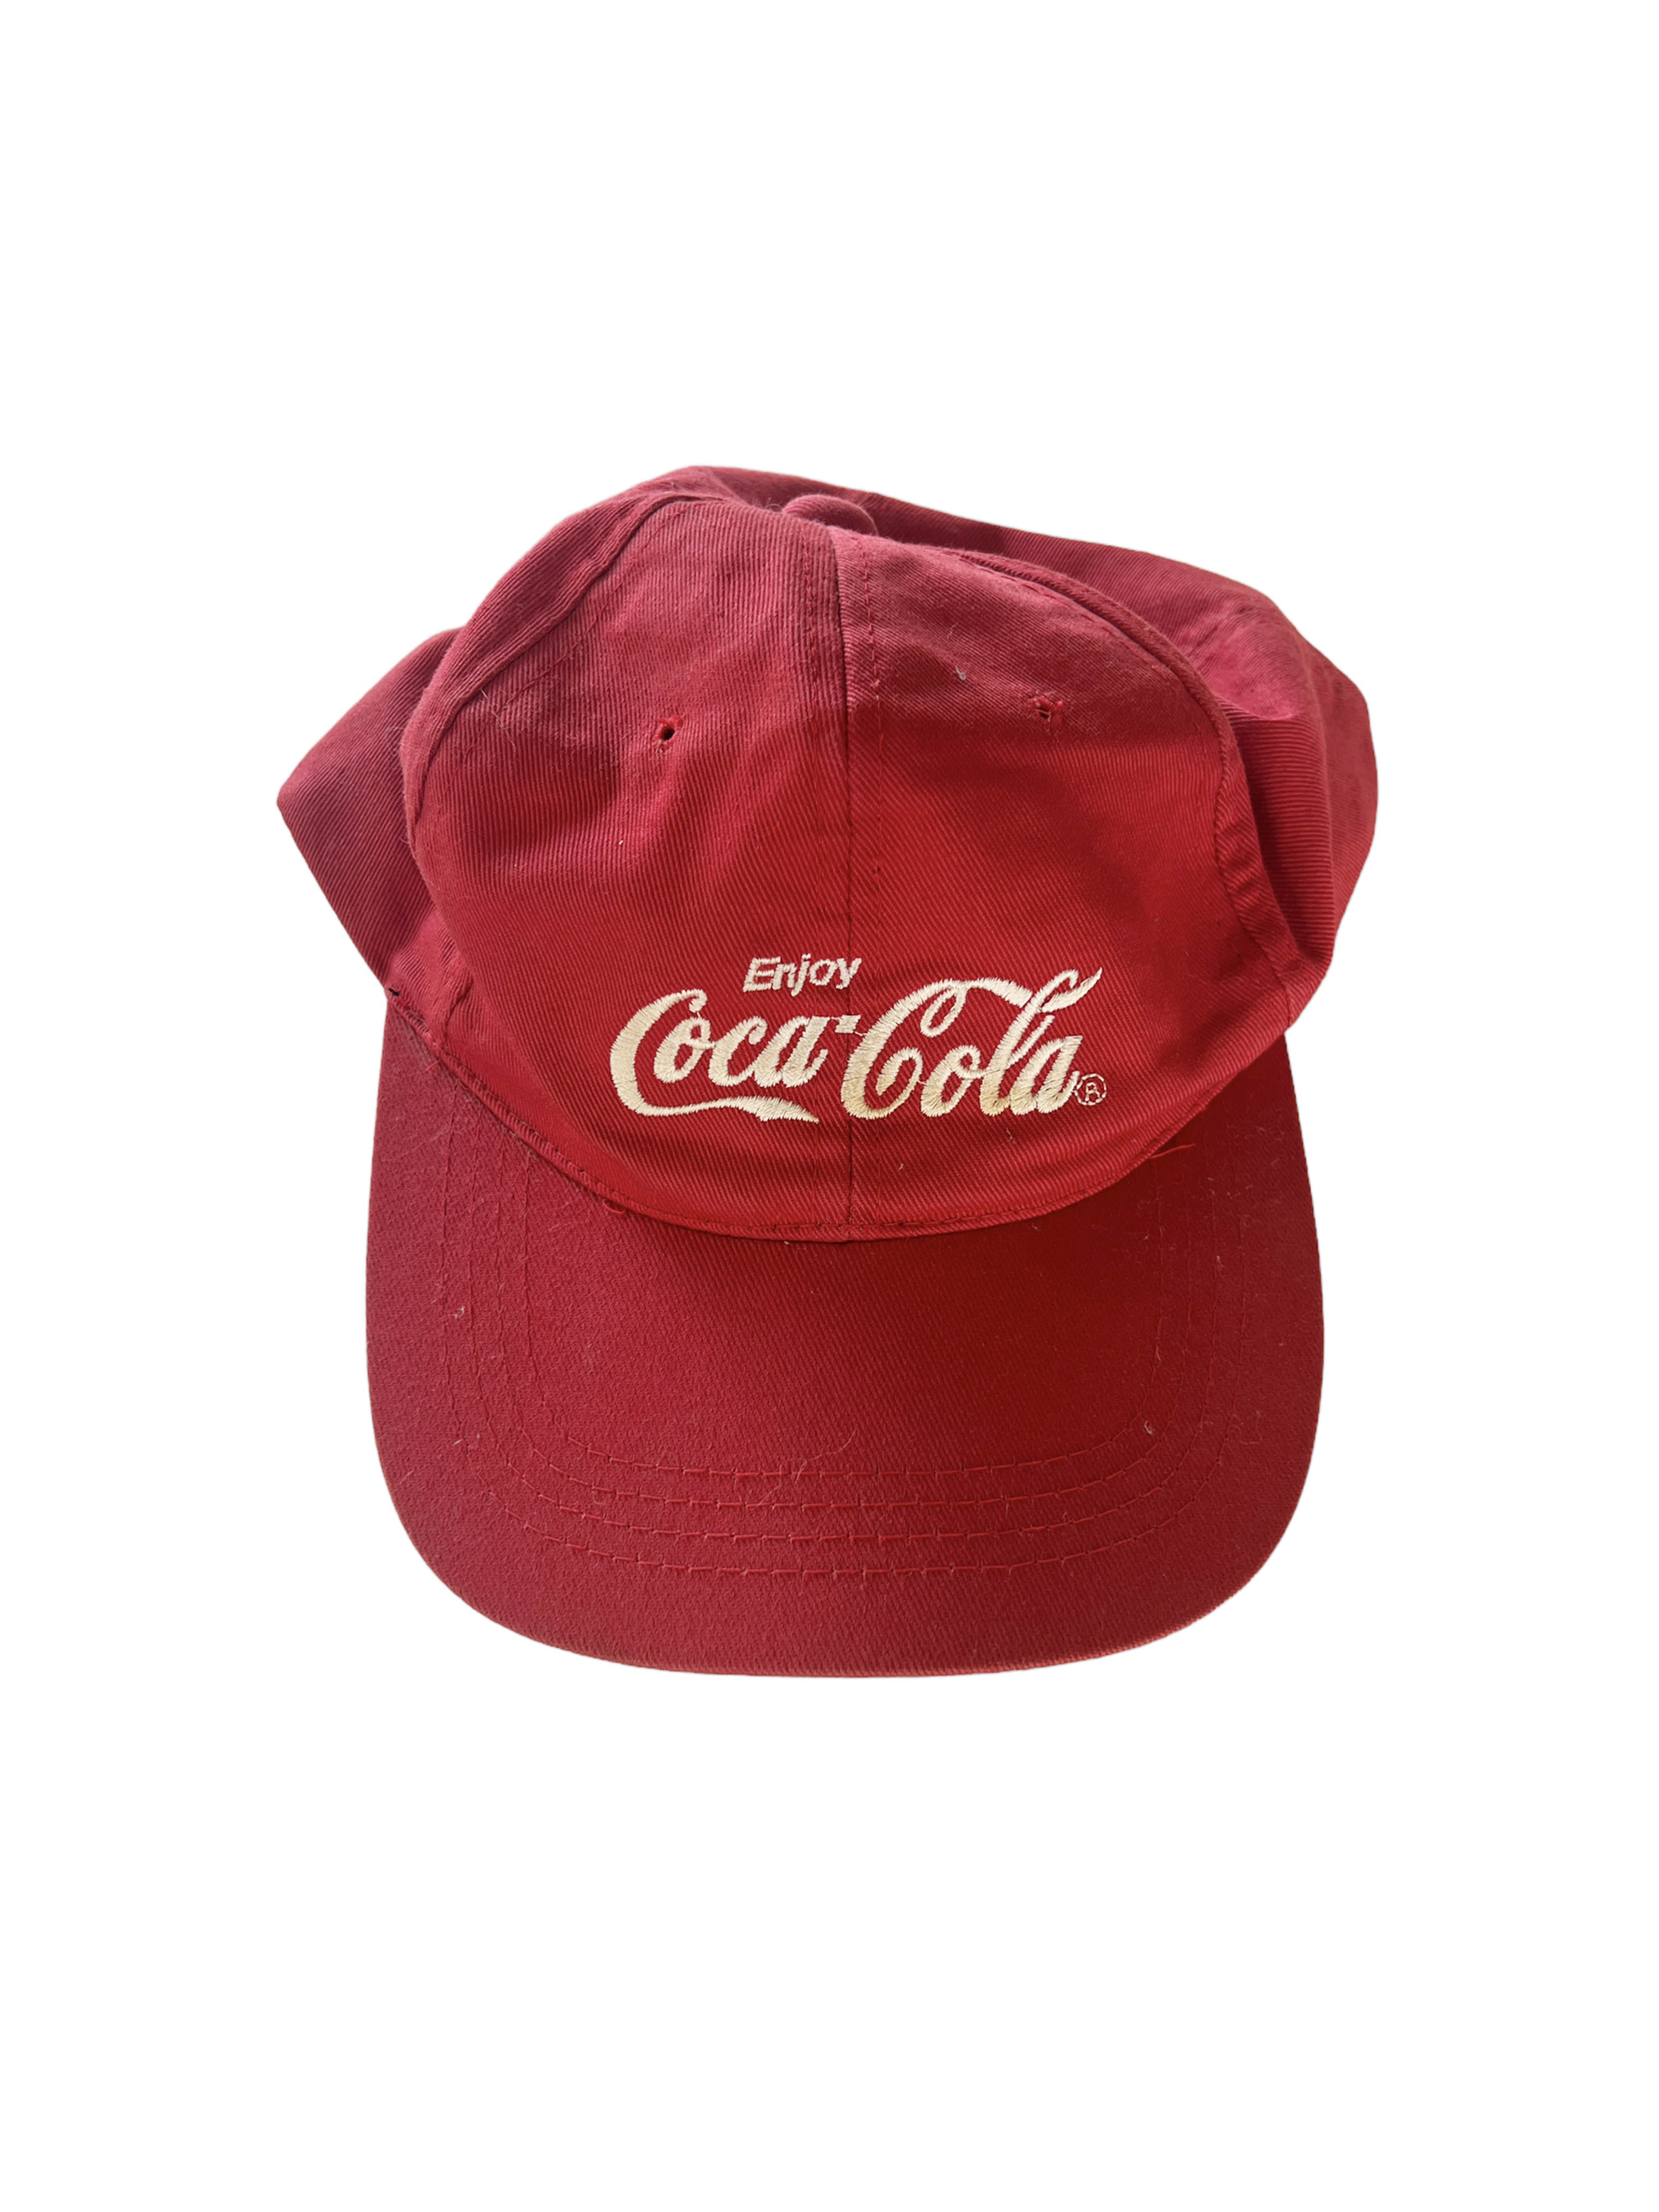 Coke ball-cap